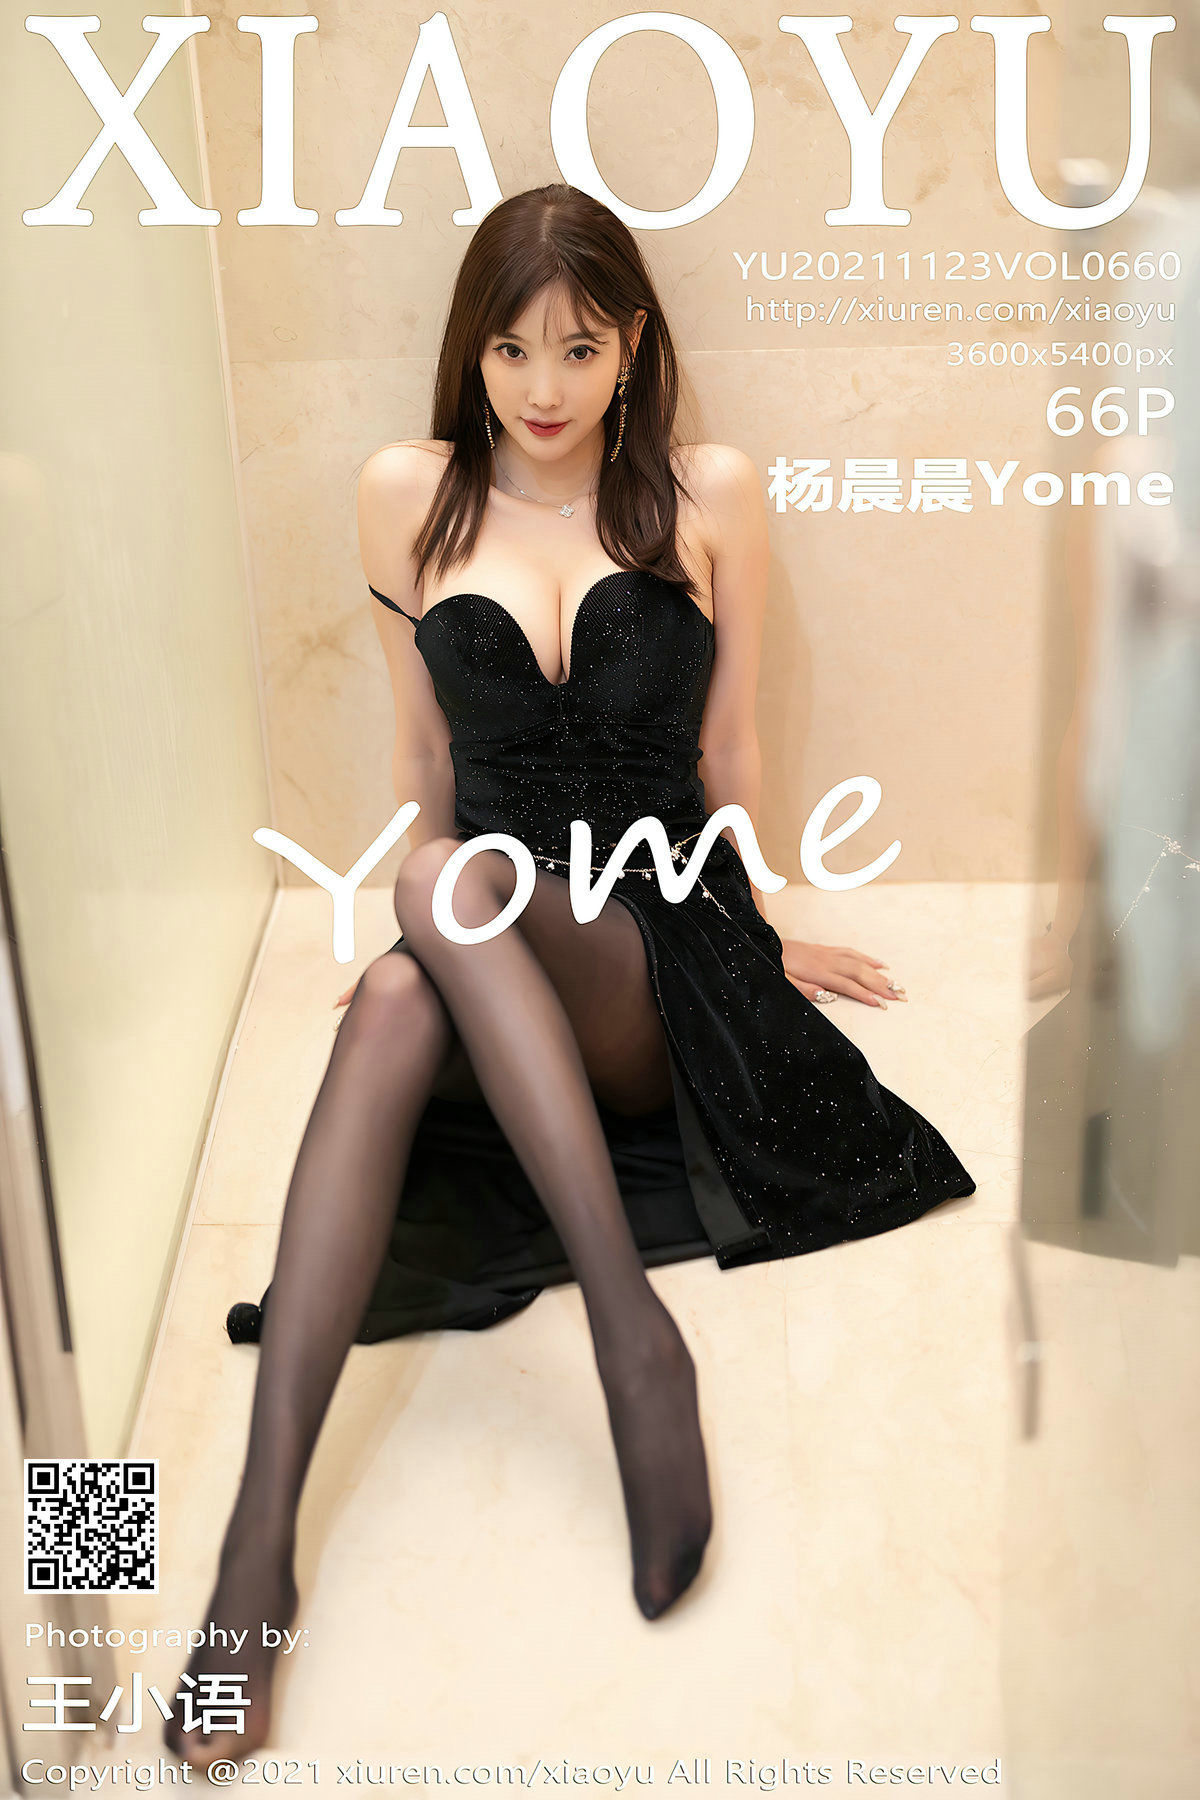 [语画界XIAOYU] Vol.660 杨晨晨Yome1